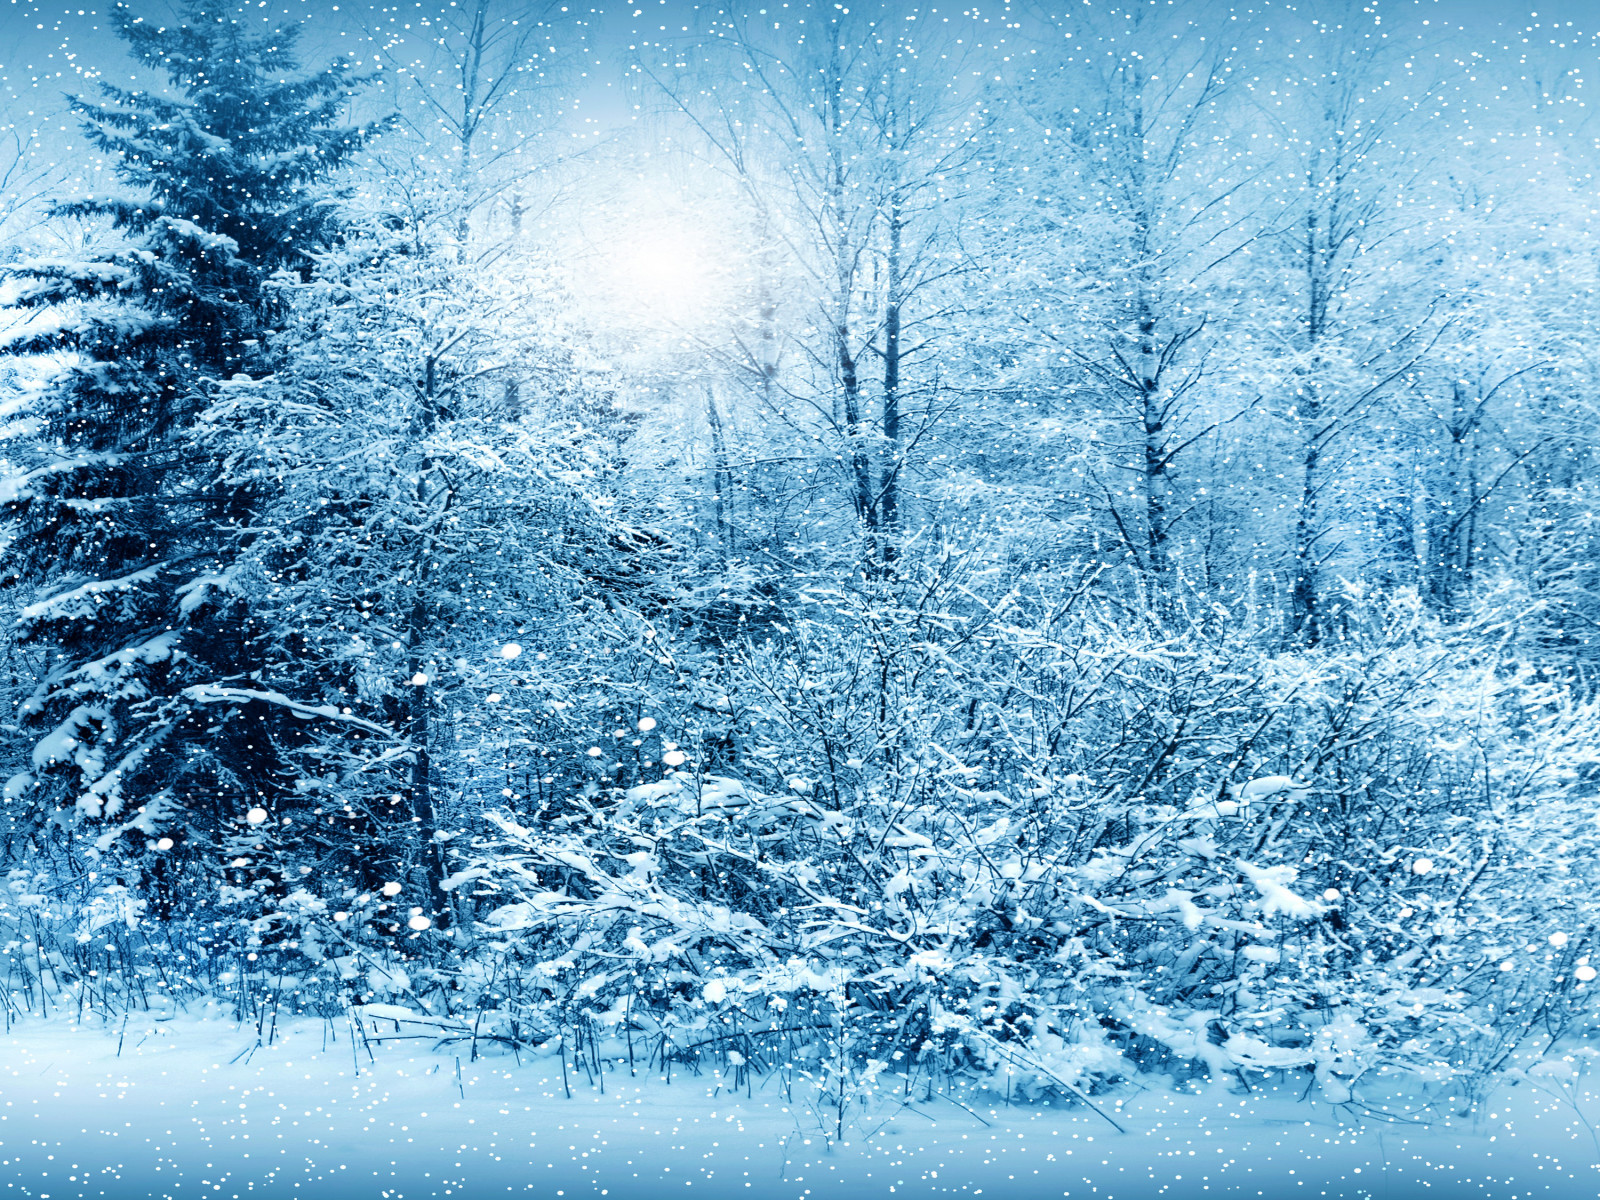 หิมะ, ธรรมชาติ, ฤดูหนาว, ภาพถ่าย, เรียบร้อย